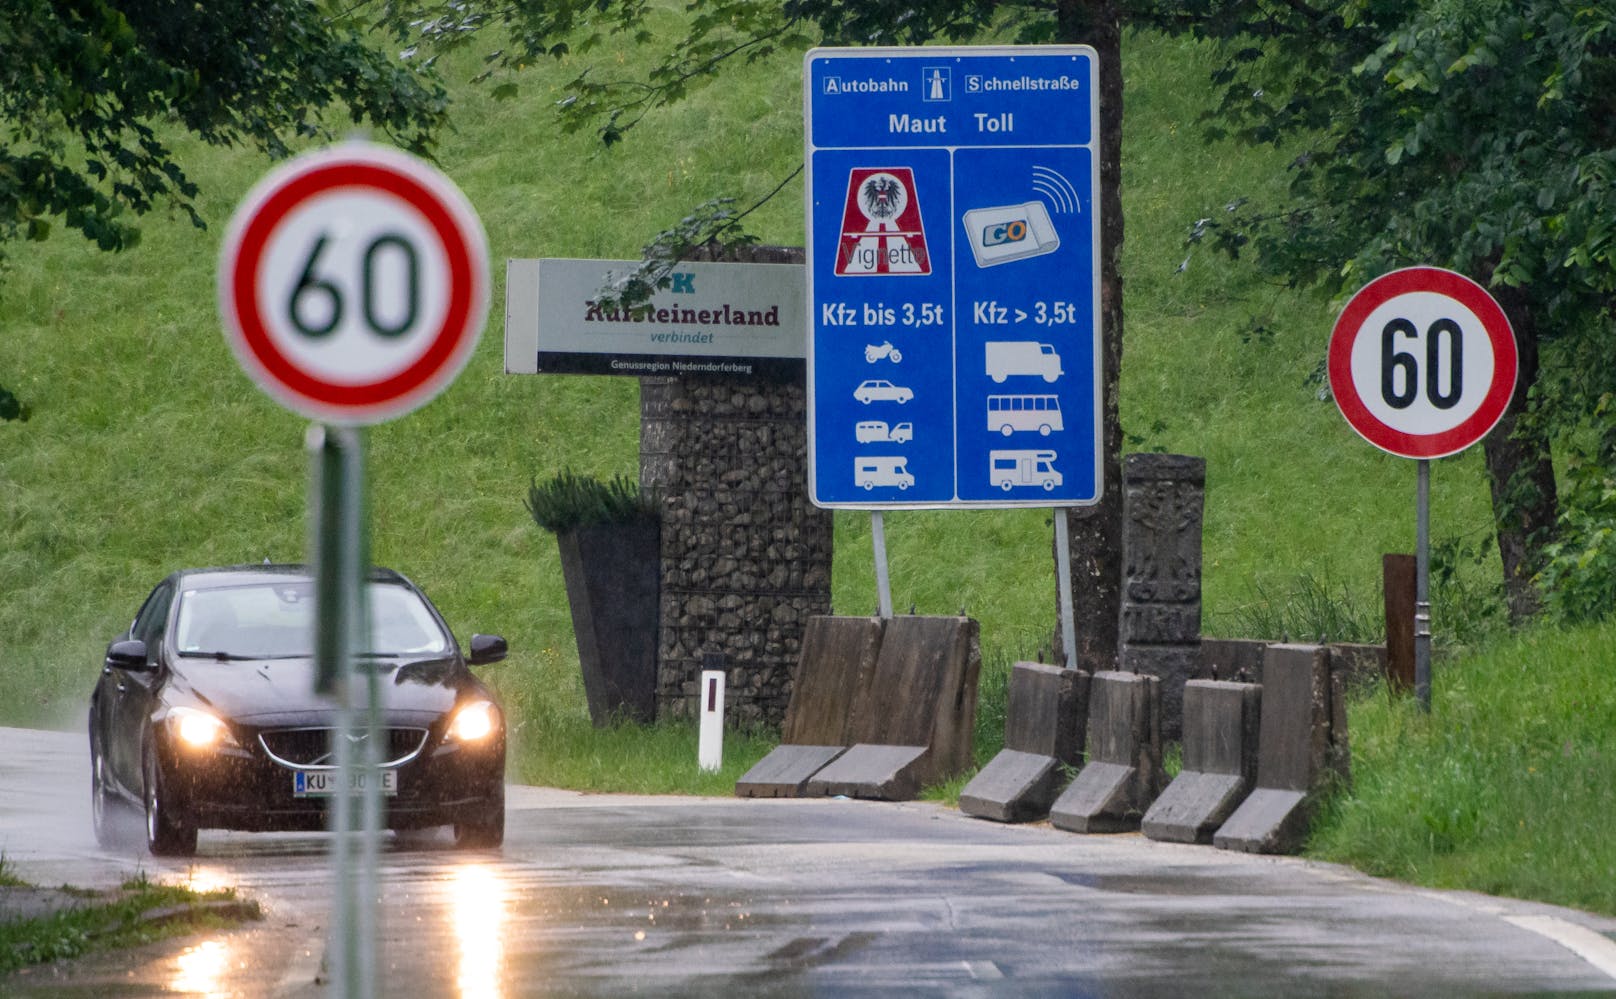 Die Grenze zwischen Tirol und Bayern im Kufsteiner Land